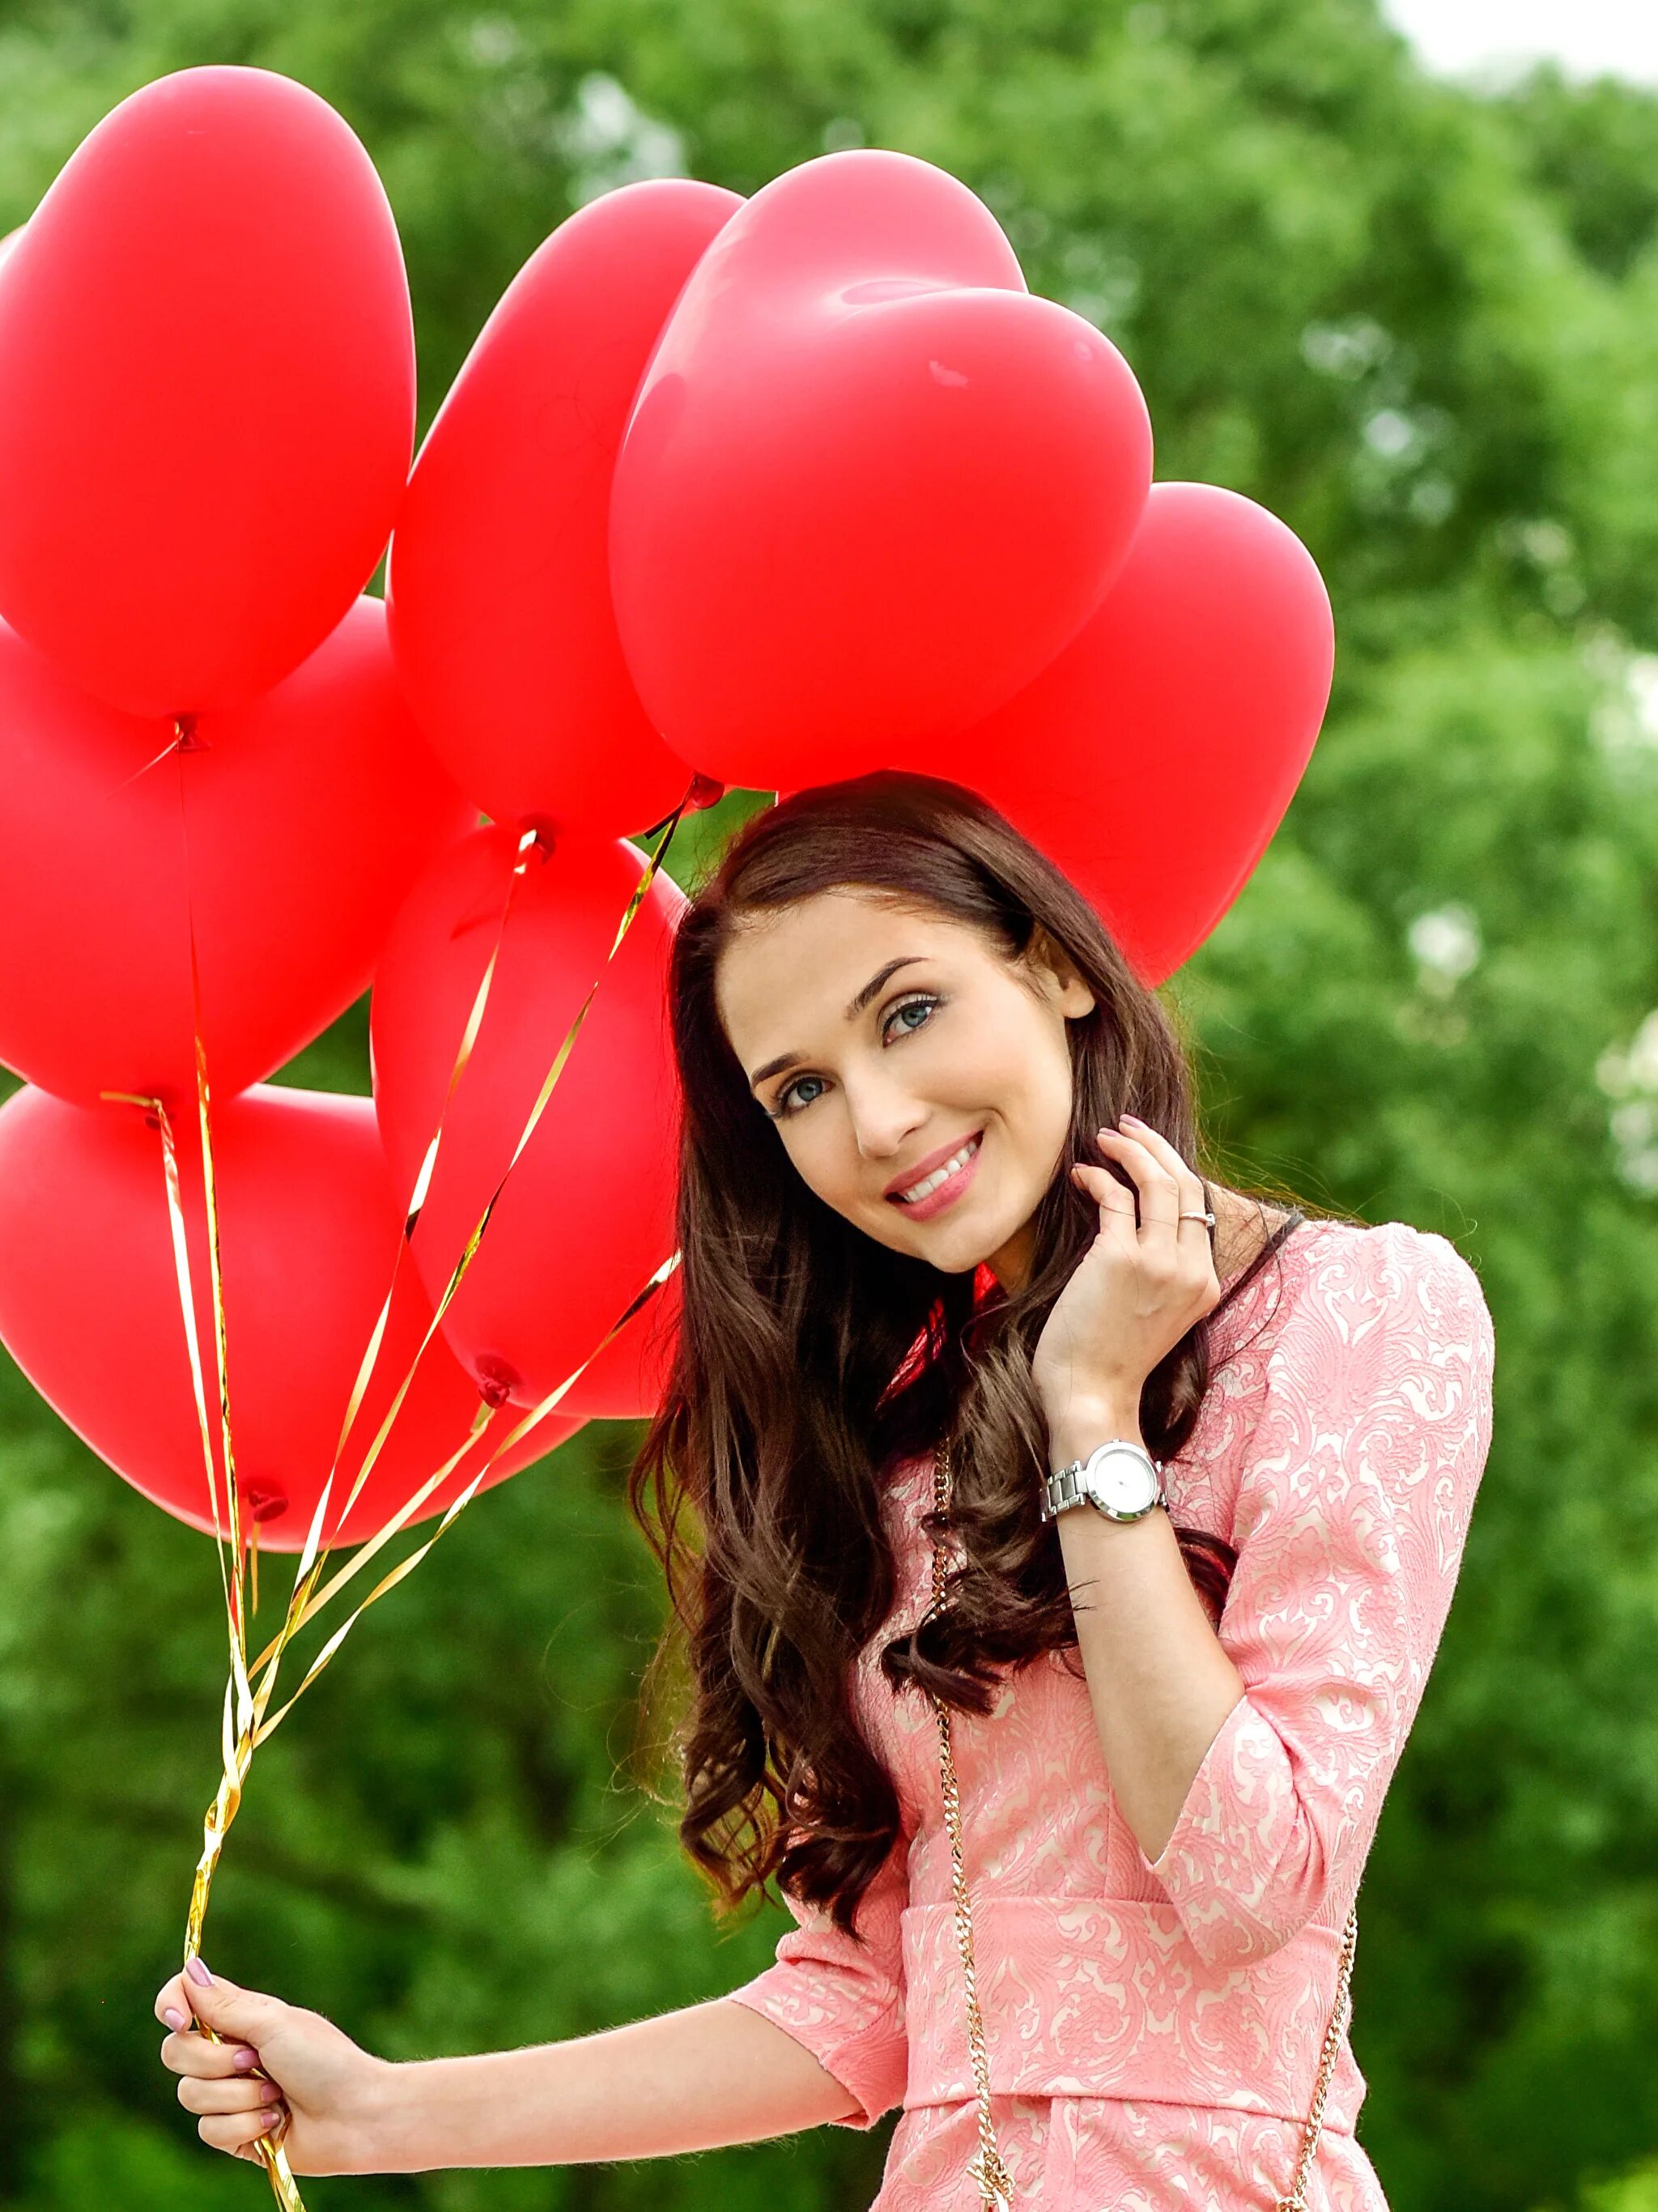 Девушка с воздушными шарами. Фотосессия с воздушными шарами. Красивые шарики для девушки. Красивые девушки с воздушными шарами.